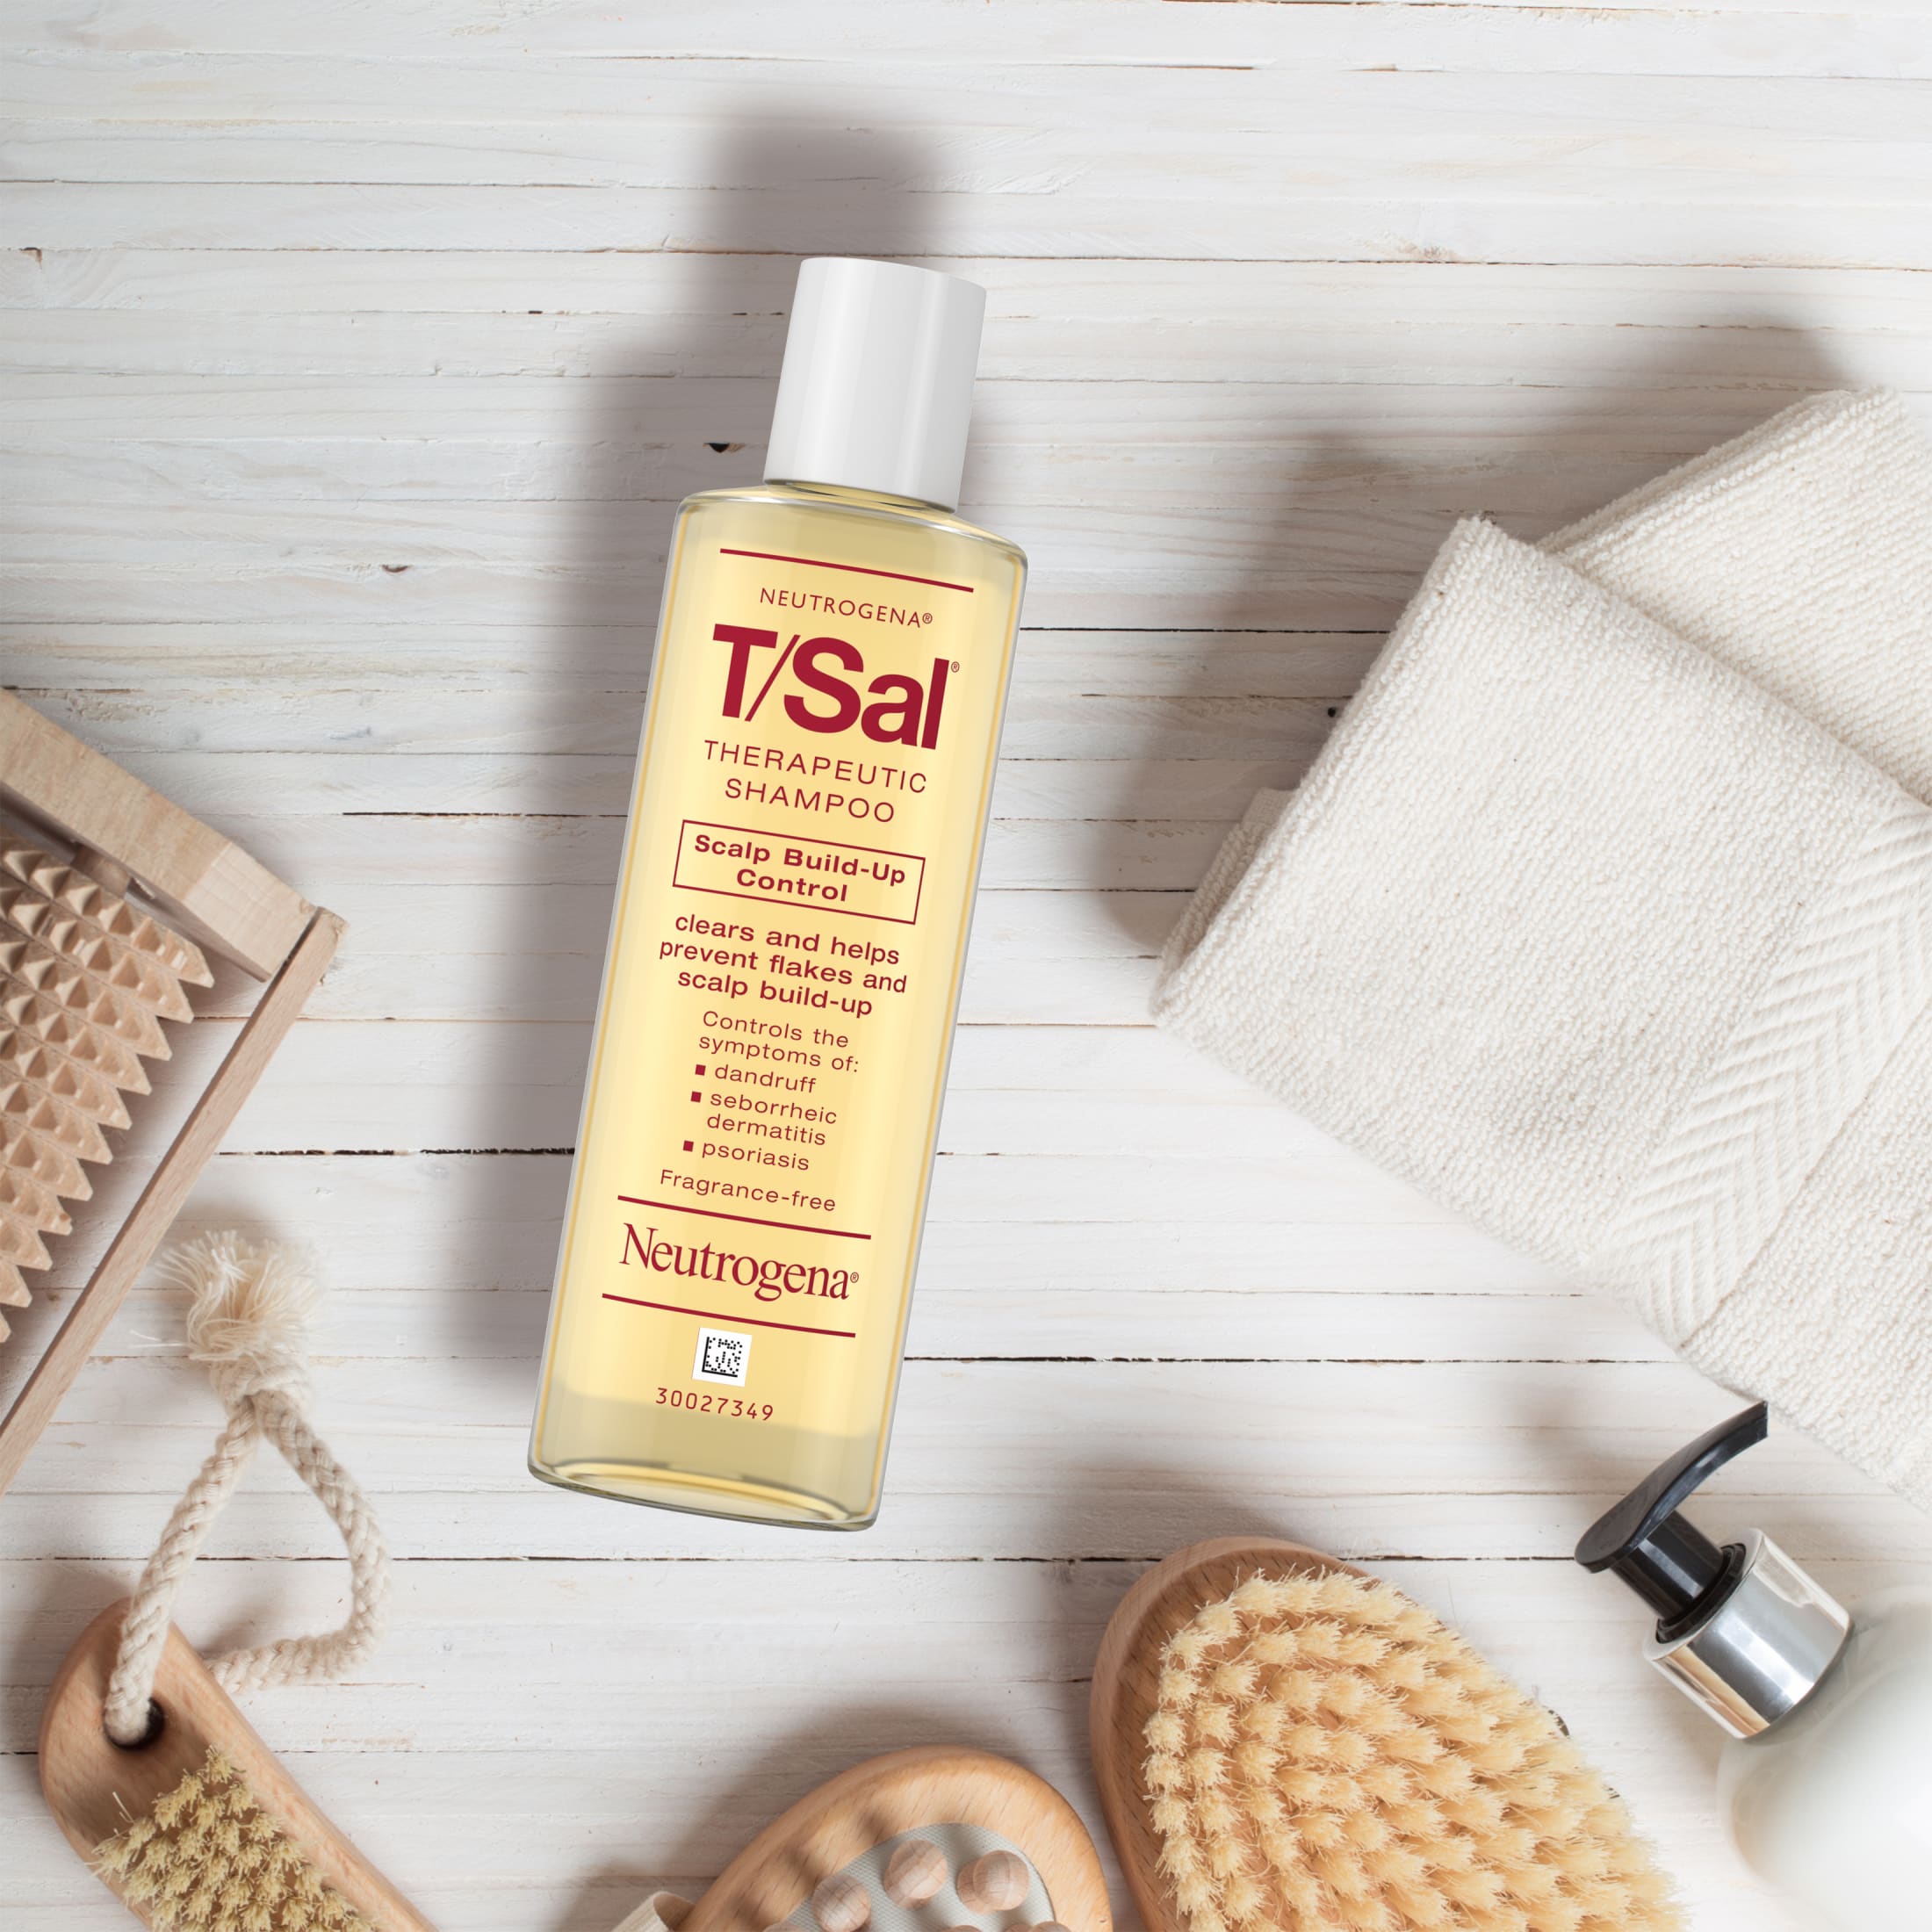 Neutrogena T/Sal Therapeutic Shampoo, 3% Salicylic Acid, 4.5 fl. oz | MTTS255